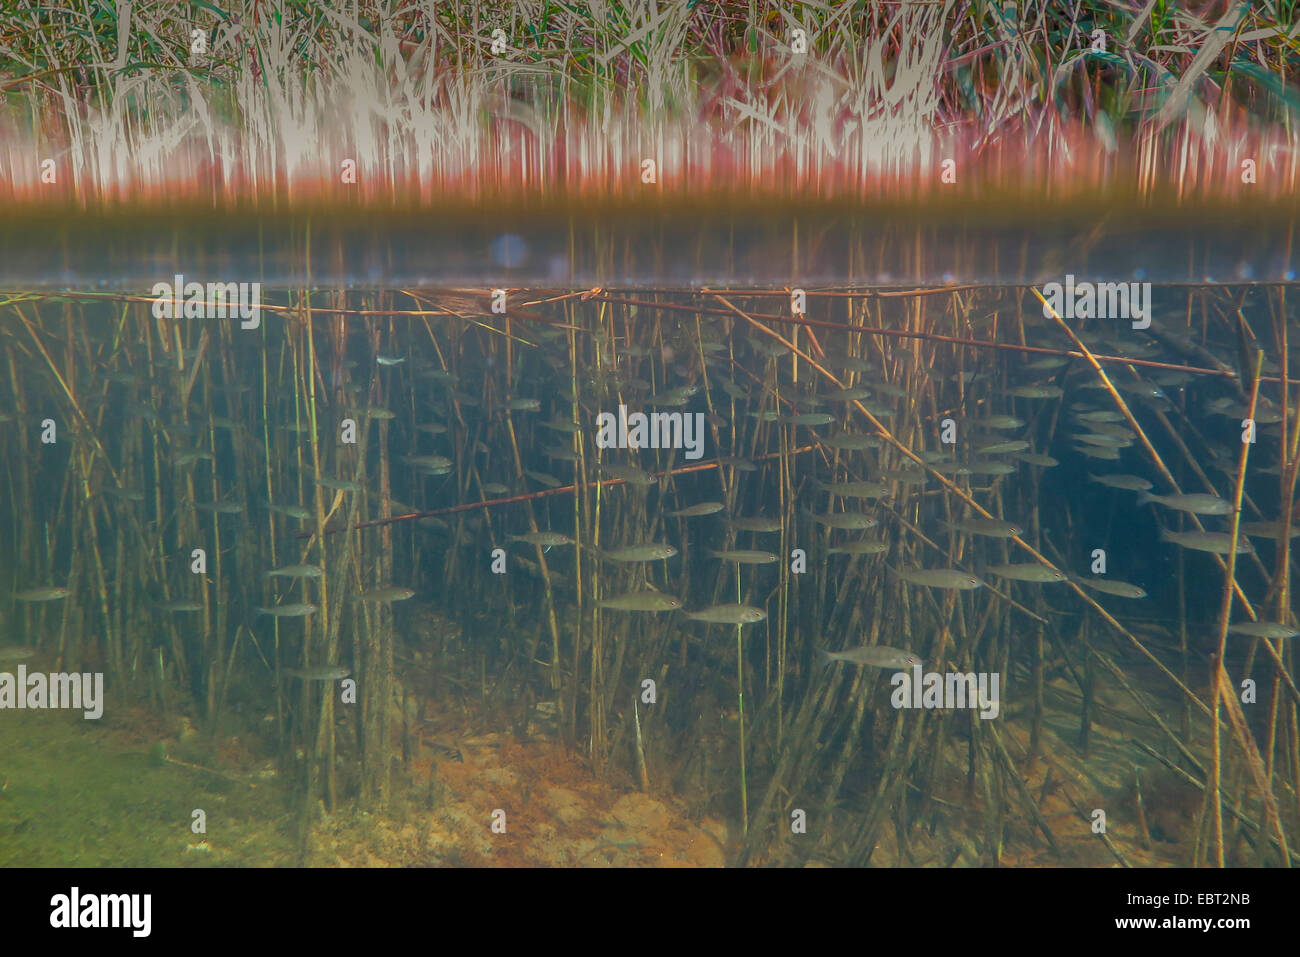 La perche, sandre européen, Redfin perchaude (Perca fluviatilis), l'école de jeunes poissons dans la zone de roseaux ; split-level-photo, de l'Allemagne, la Bavière, le lac de Chiemsee Banque D'Images